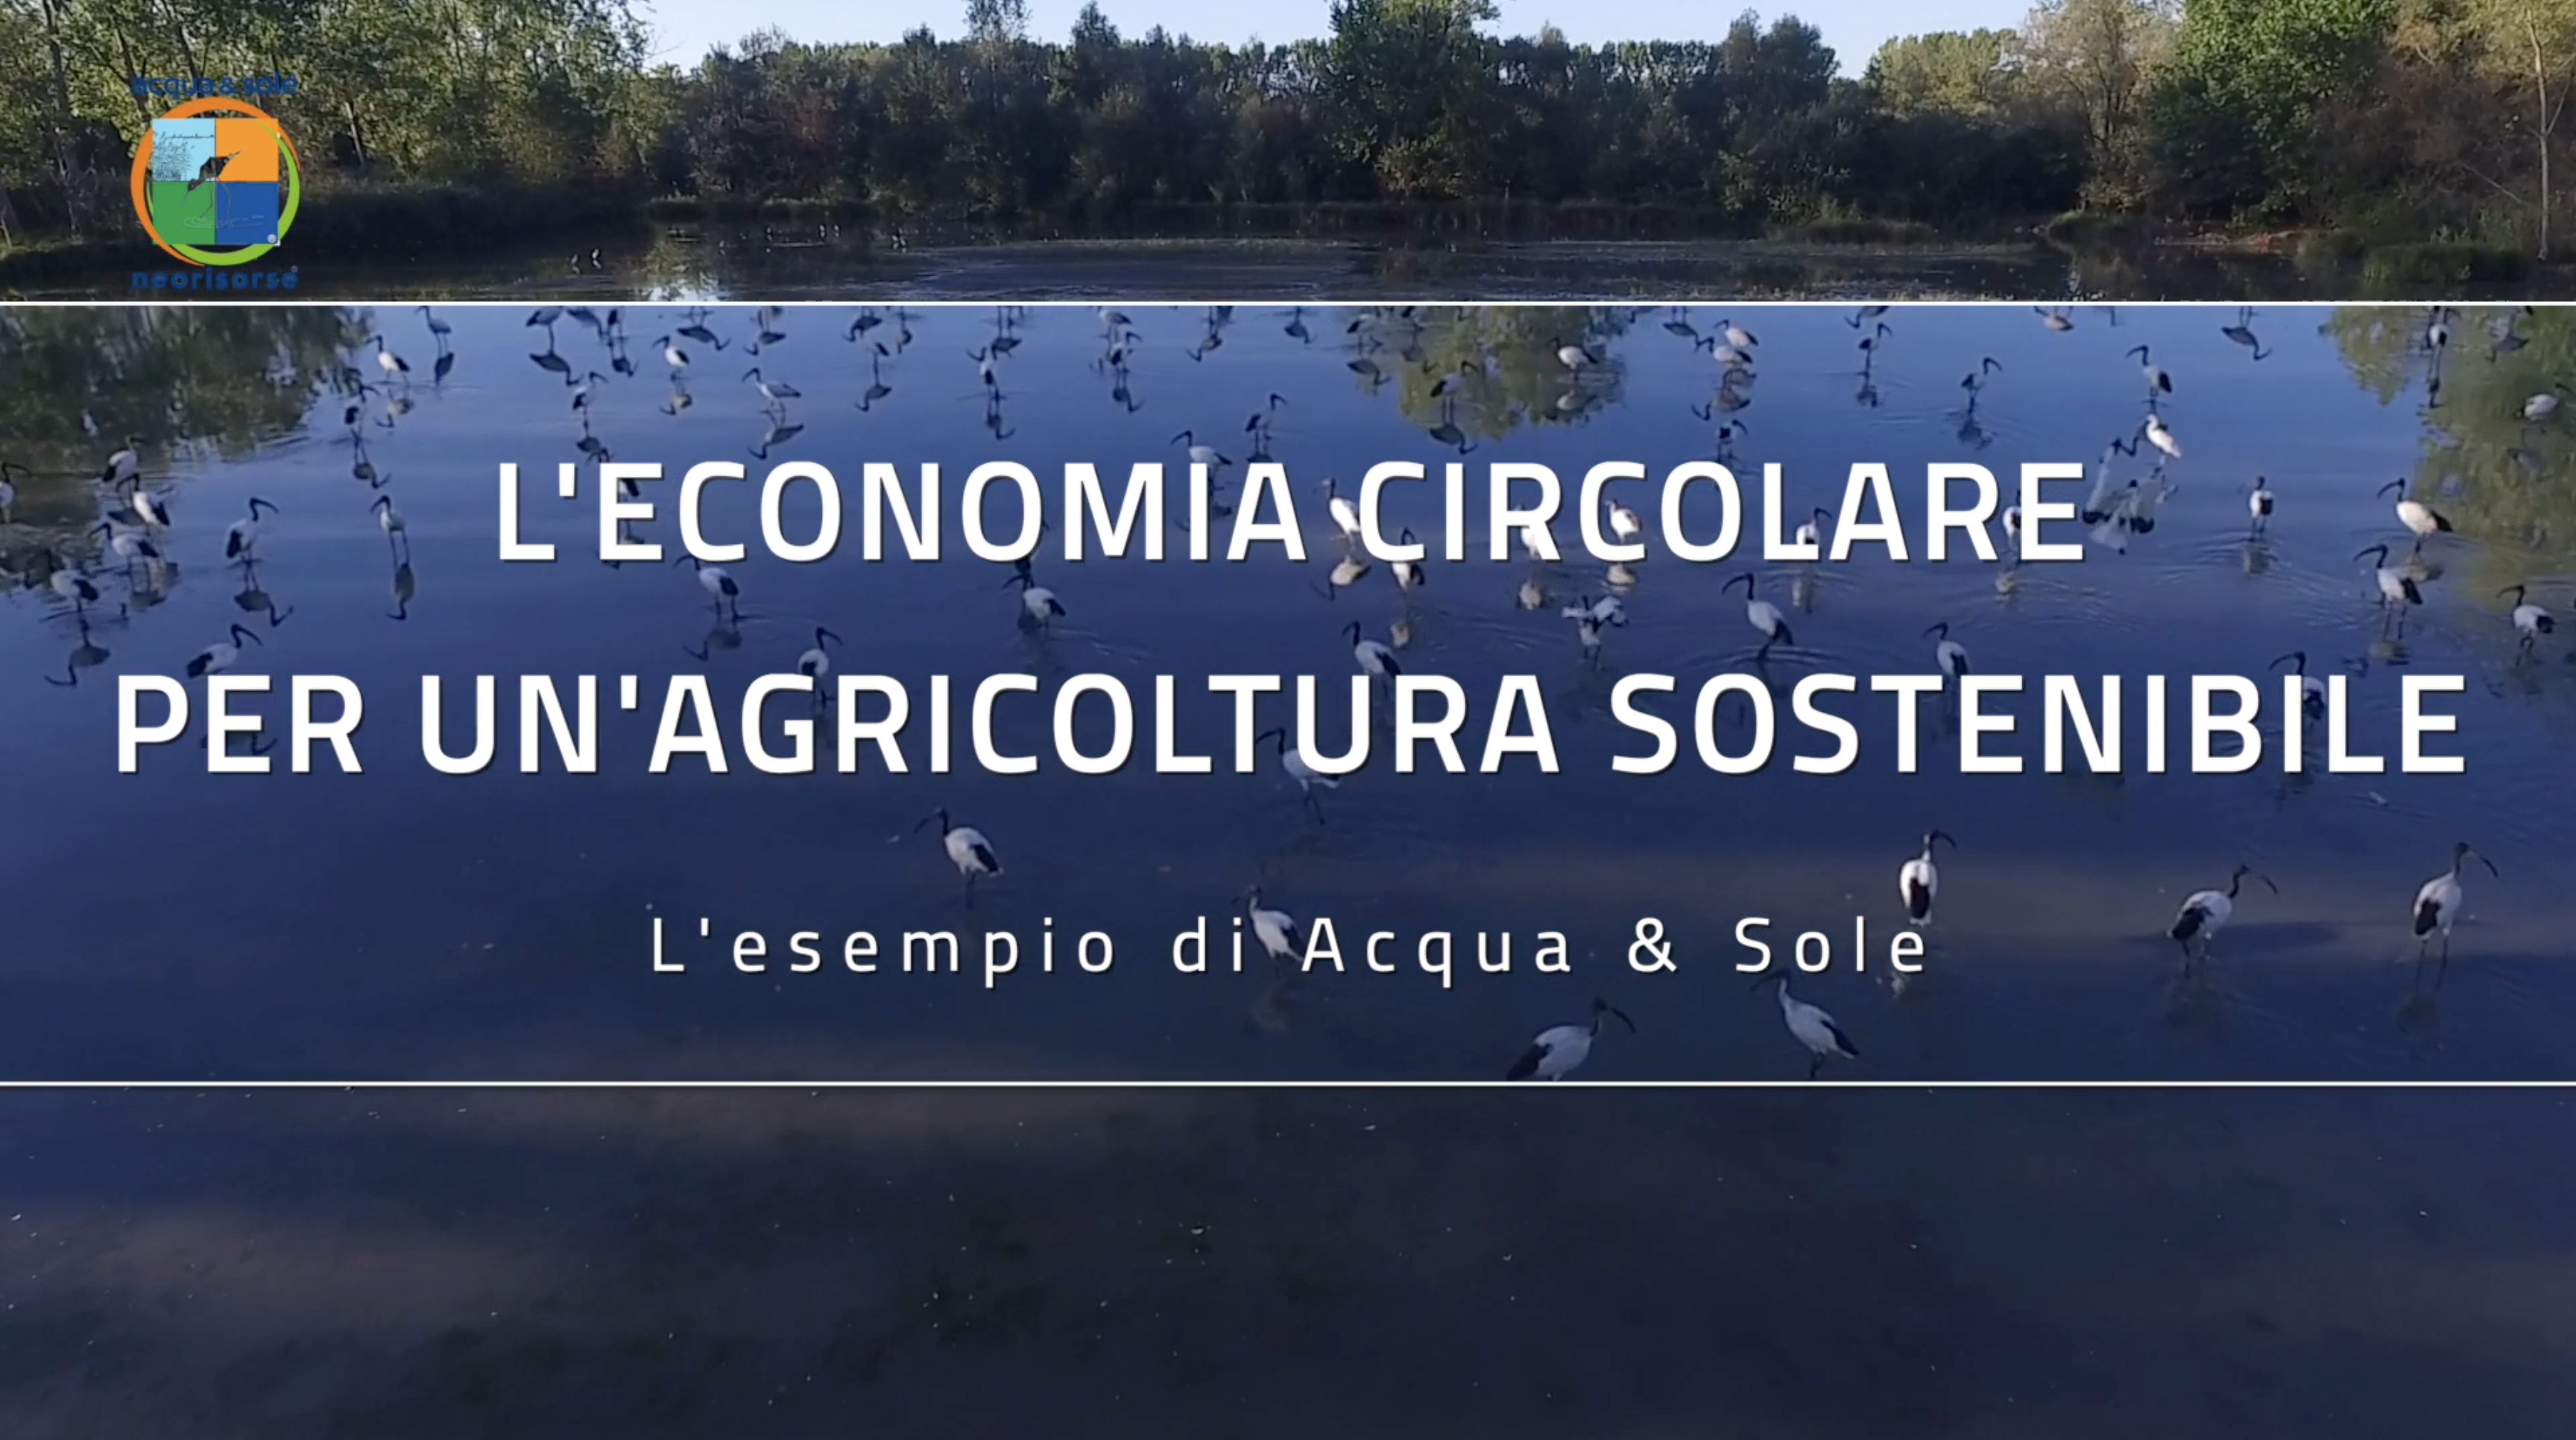 L'economia circolare per un'agricoltura sostenibile: l'esempio Acqua & Sole